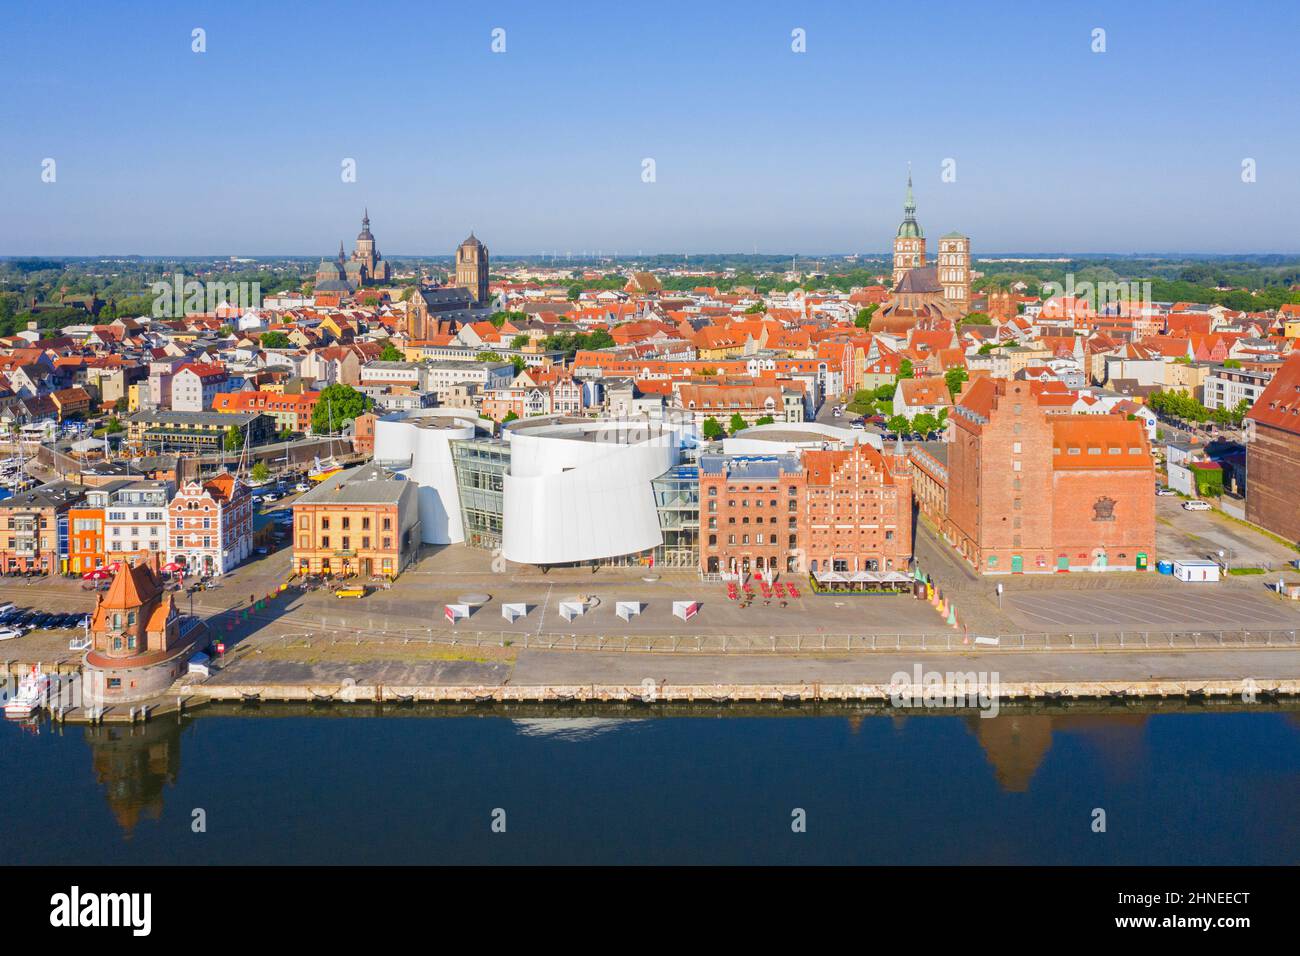 Vue aérienne sur le front de mer et aquarium public Ozeaneum dans le port de la ville hanséatique de Stralsund en été, Mecklembourg-Poméranie-Occidentale, Allemagne Banque D'Images